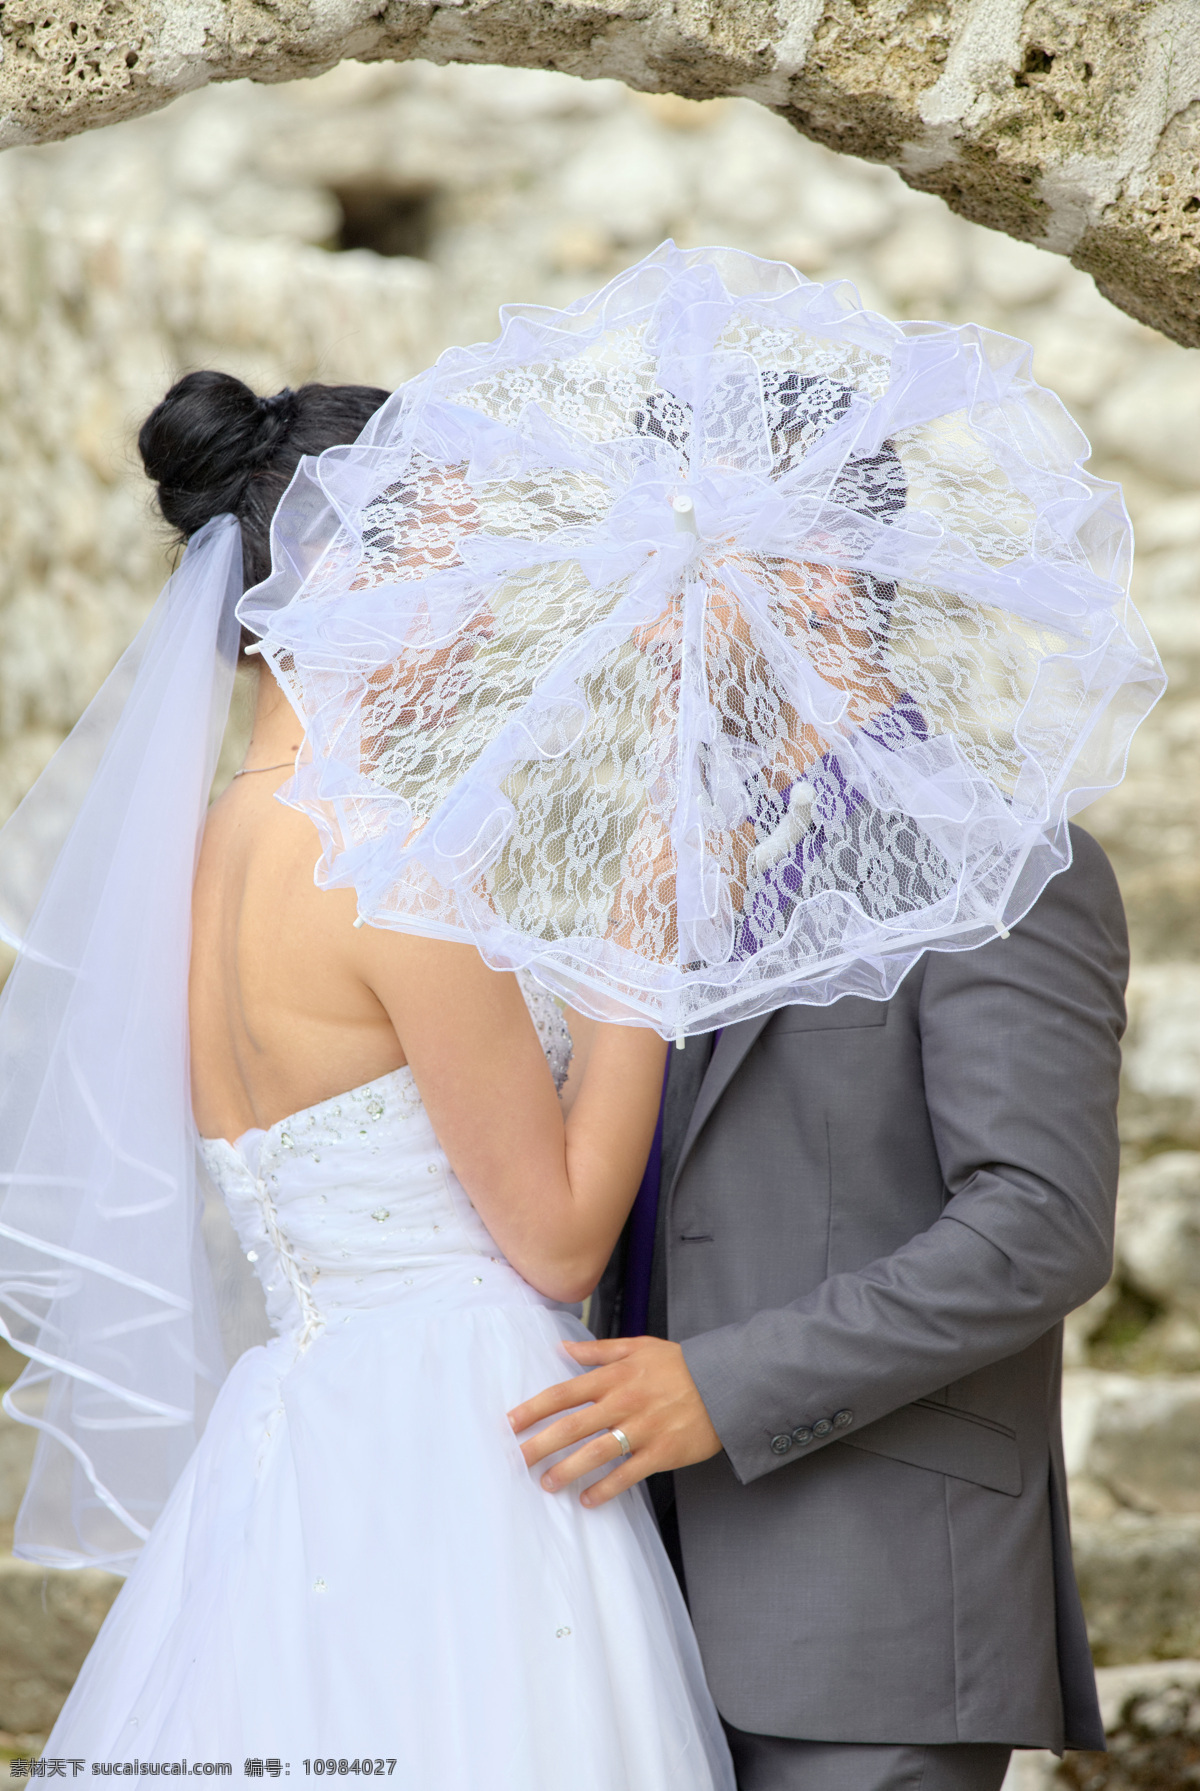 伞 后面 夫妻 伞后面的夫妻 新婚夫妻 婚纱照 男人 女人 生活人物 新娘 新郎 情侣图片 人物图片